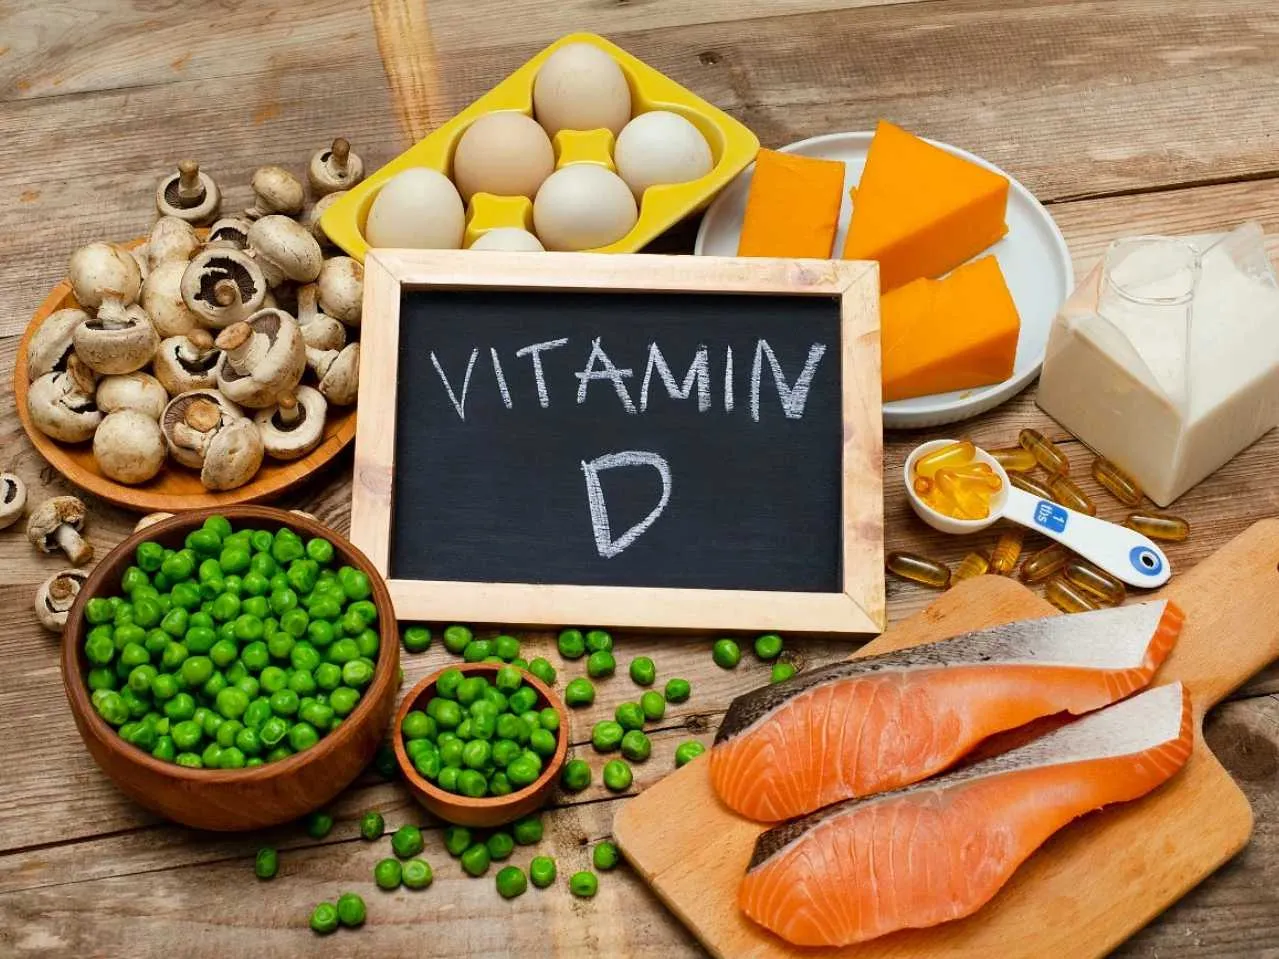 Vitamin D rich diet